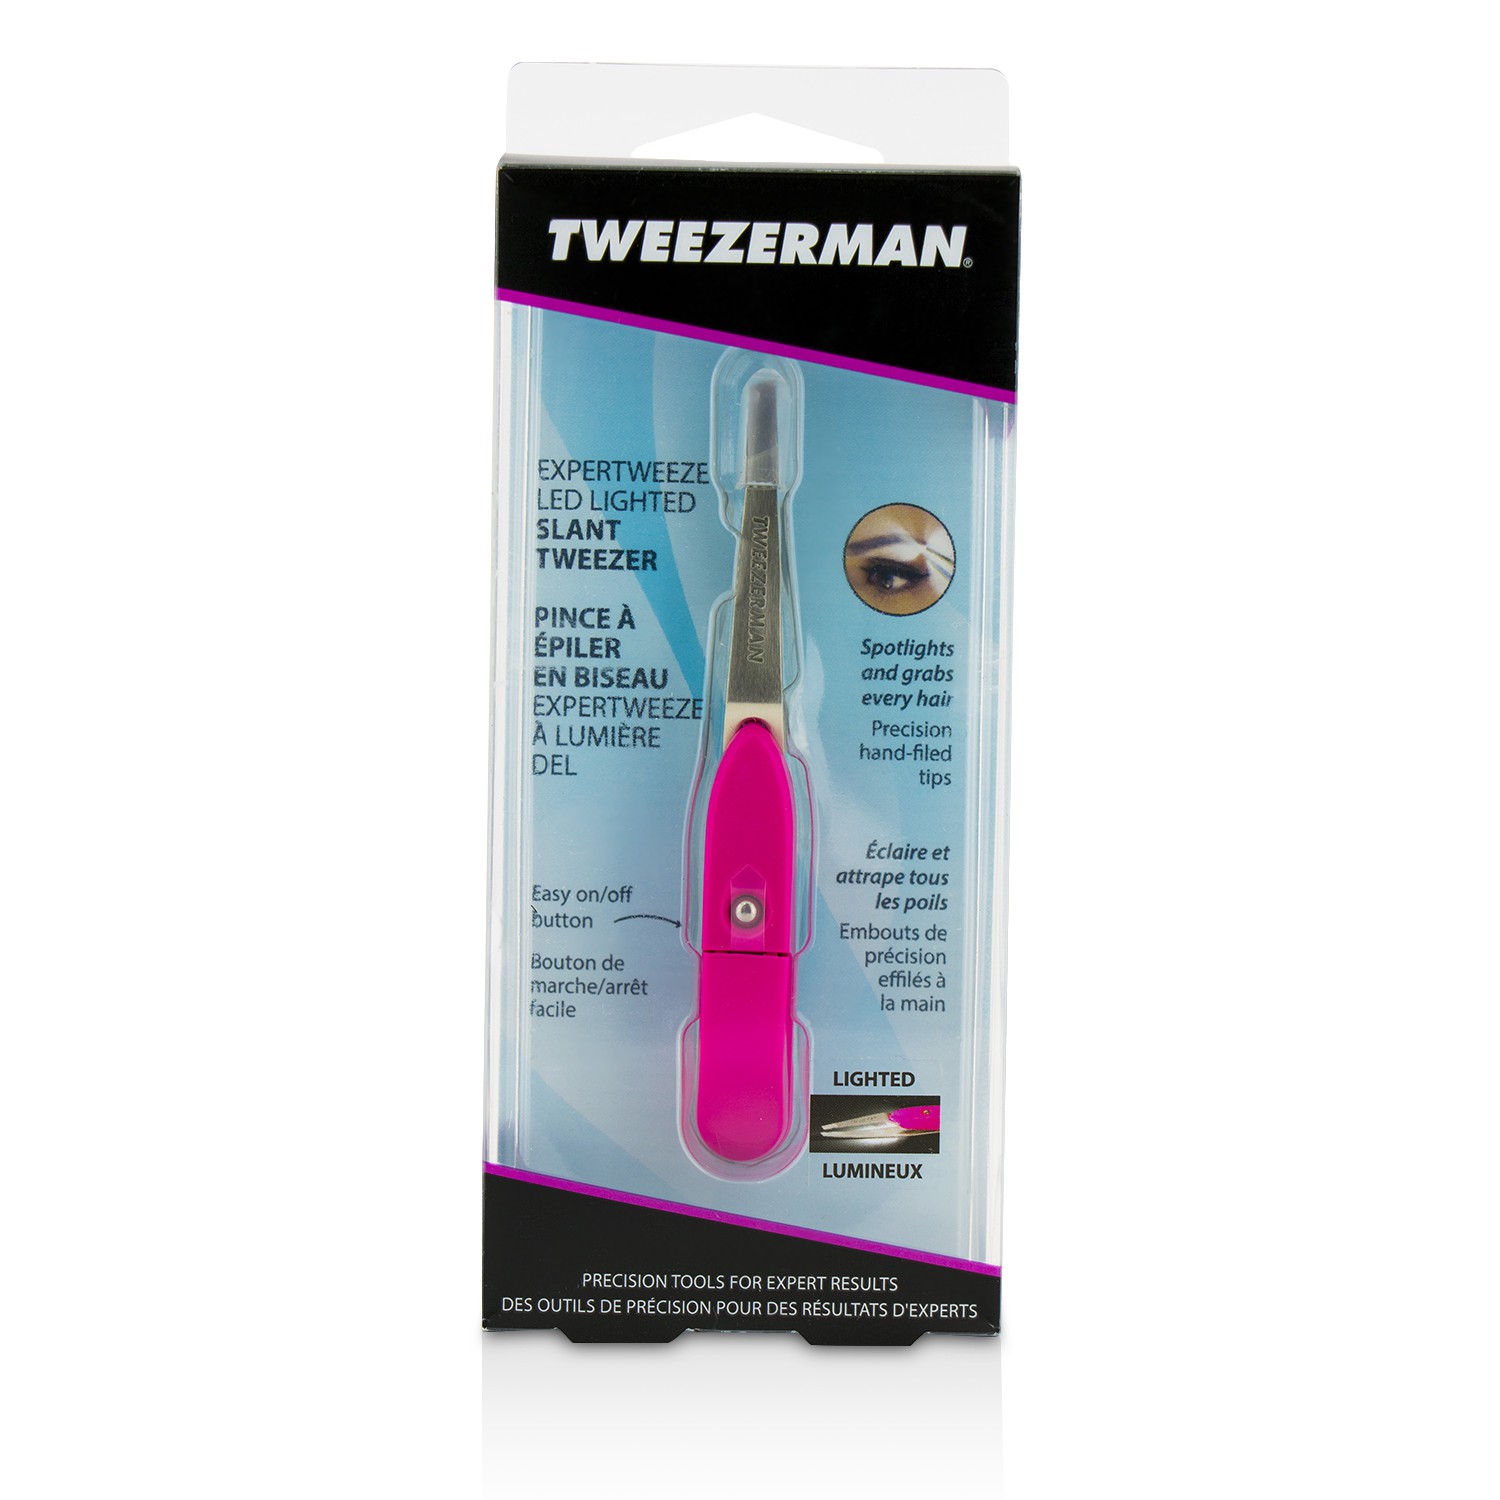 Expertweeze LED Lighted Slant Tweezer Tweezerman Image